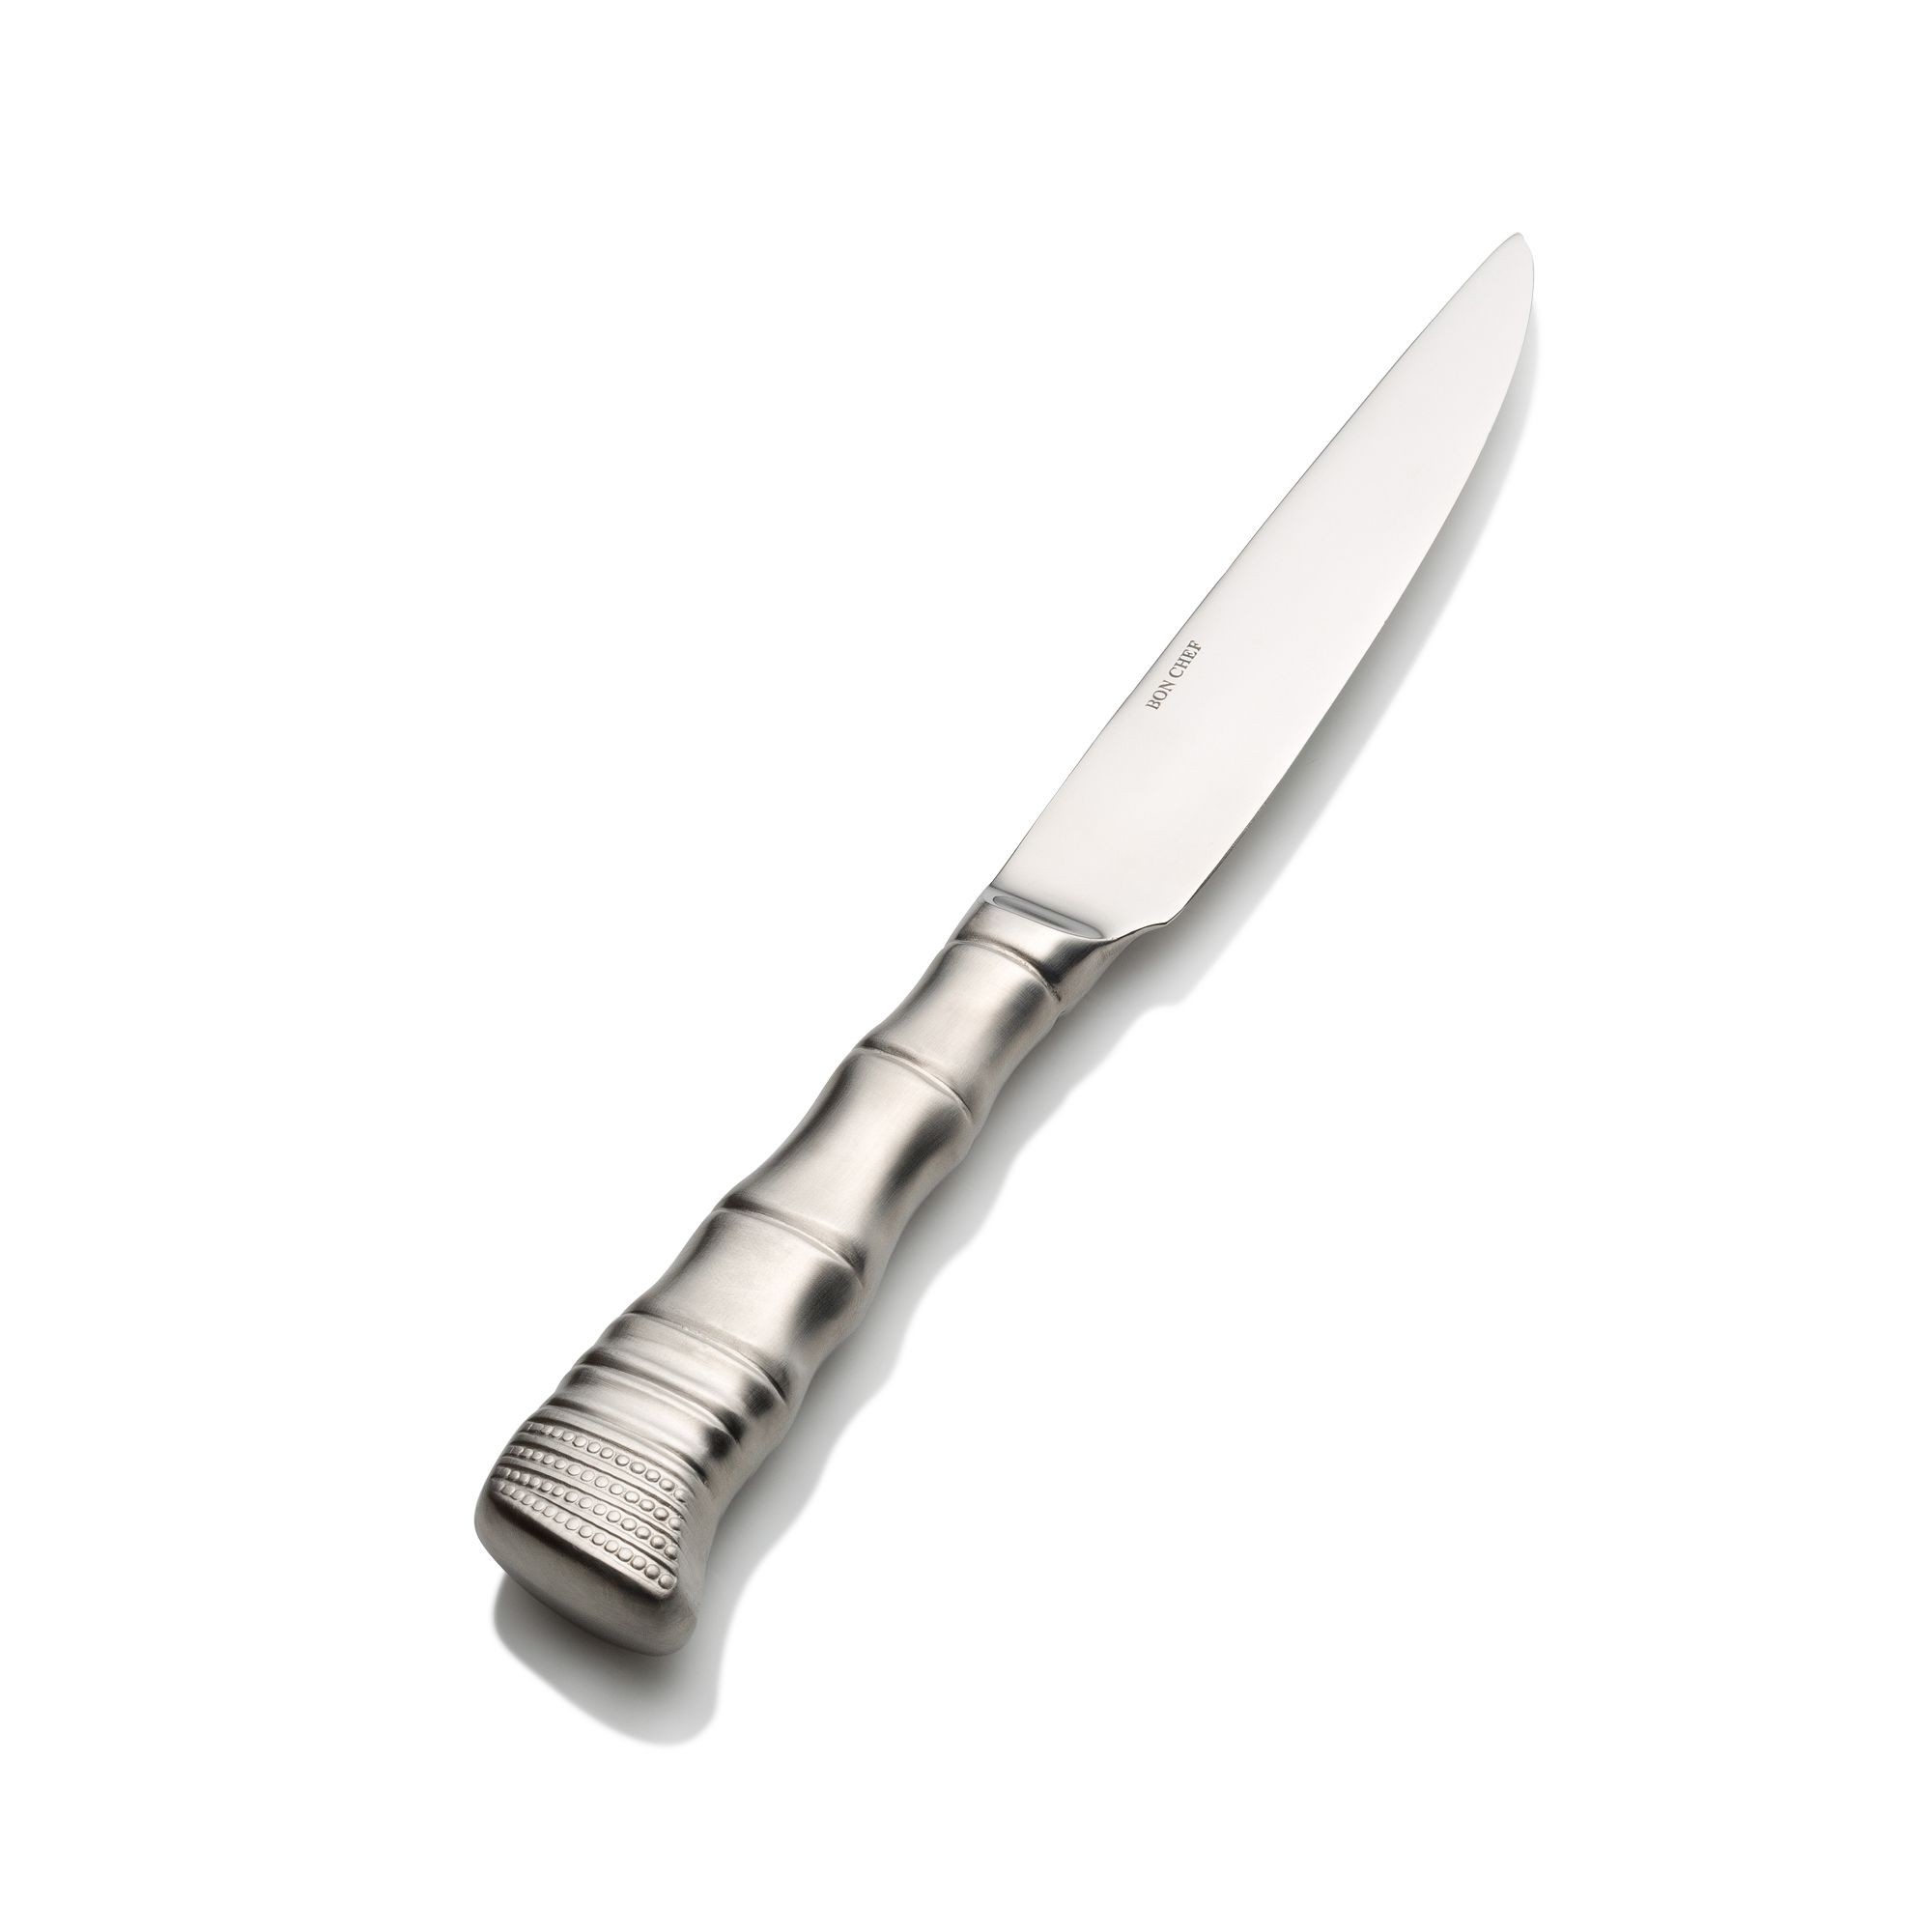 Bon Chef S933 Kobe 18/8 Stainless Steel Straight Blade Steak Knife 9-3/4